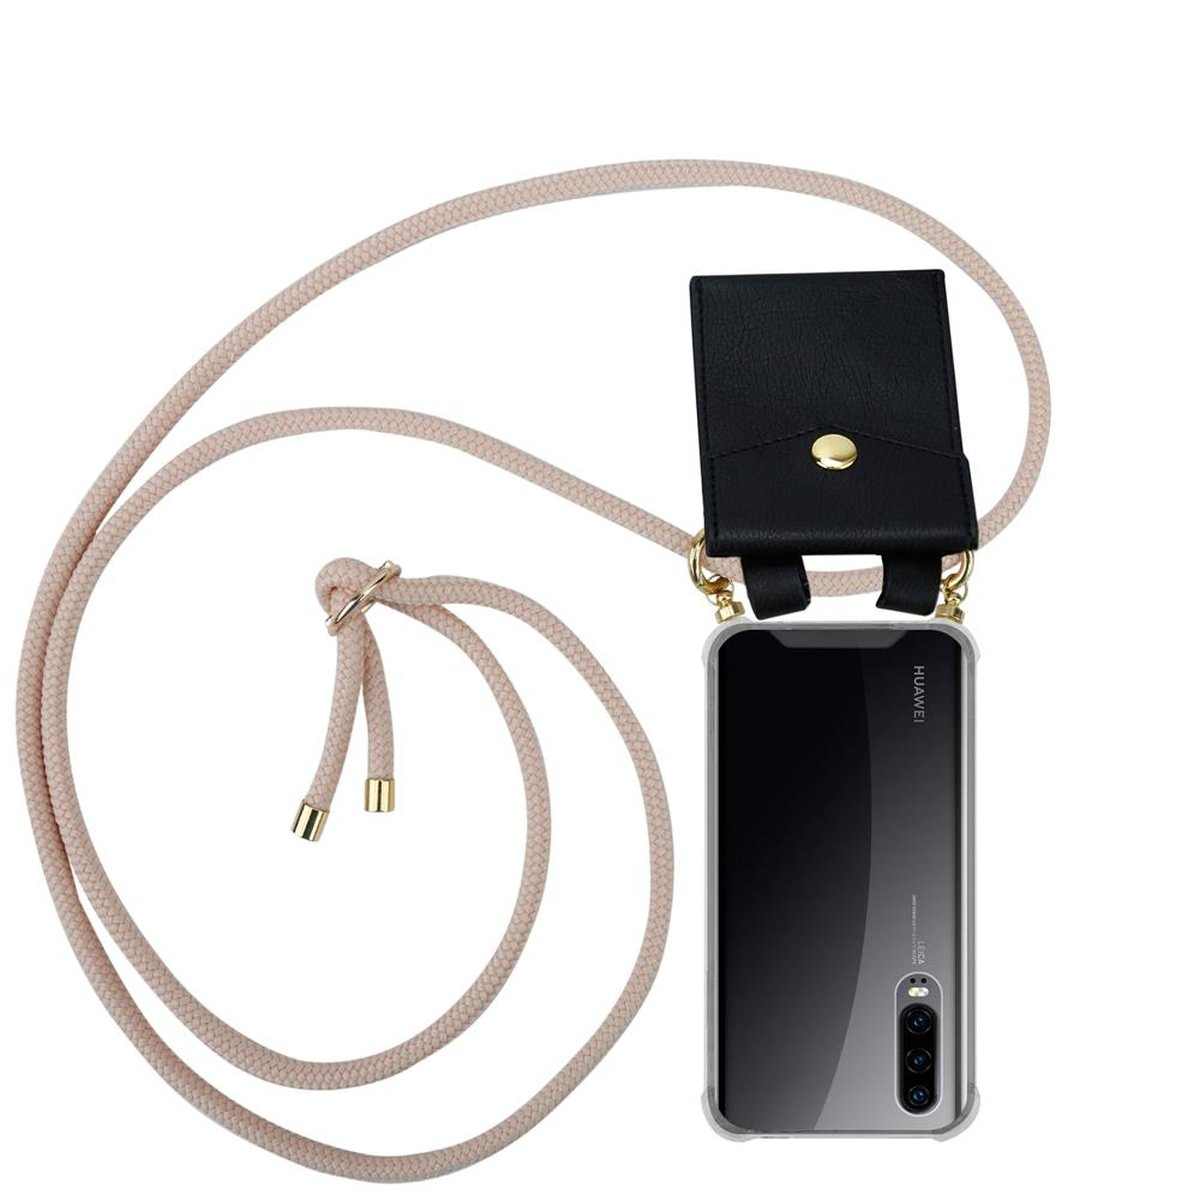 CADORABO Handy Kette mit abnehmbarer Hülle, Band Huawei, P30, ROSÉGOLD PERLIG Ringen, Gold Kordel und Backcover